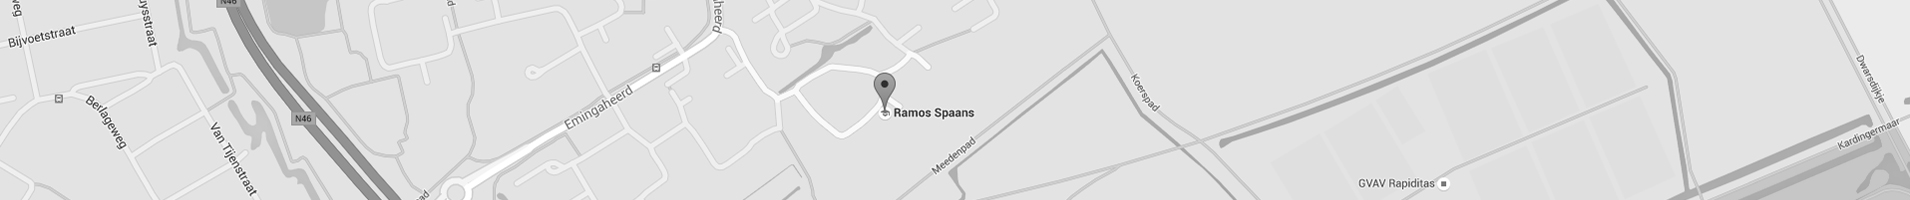 Plan direct uw route naar Ramos Spaans